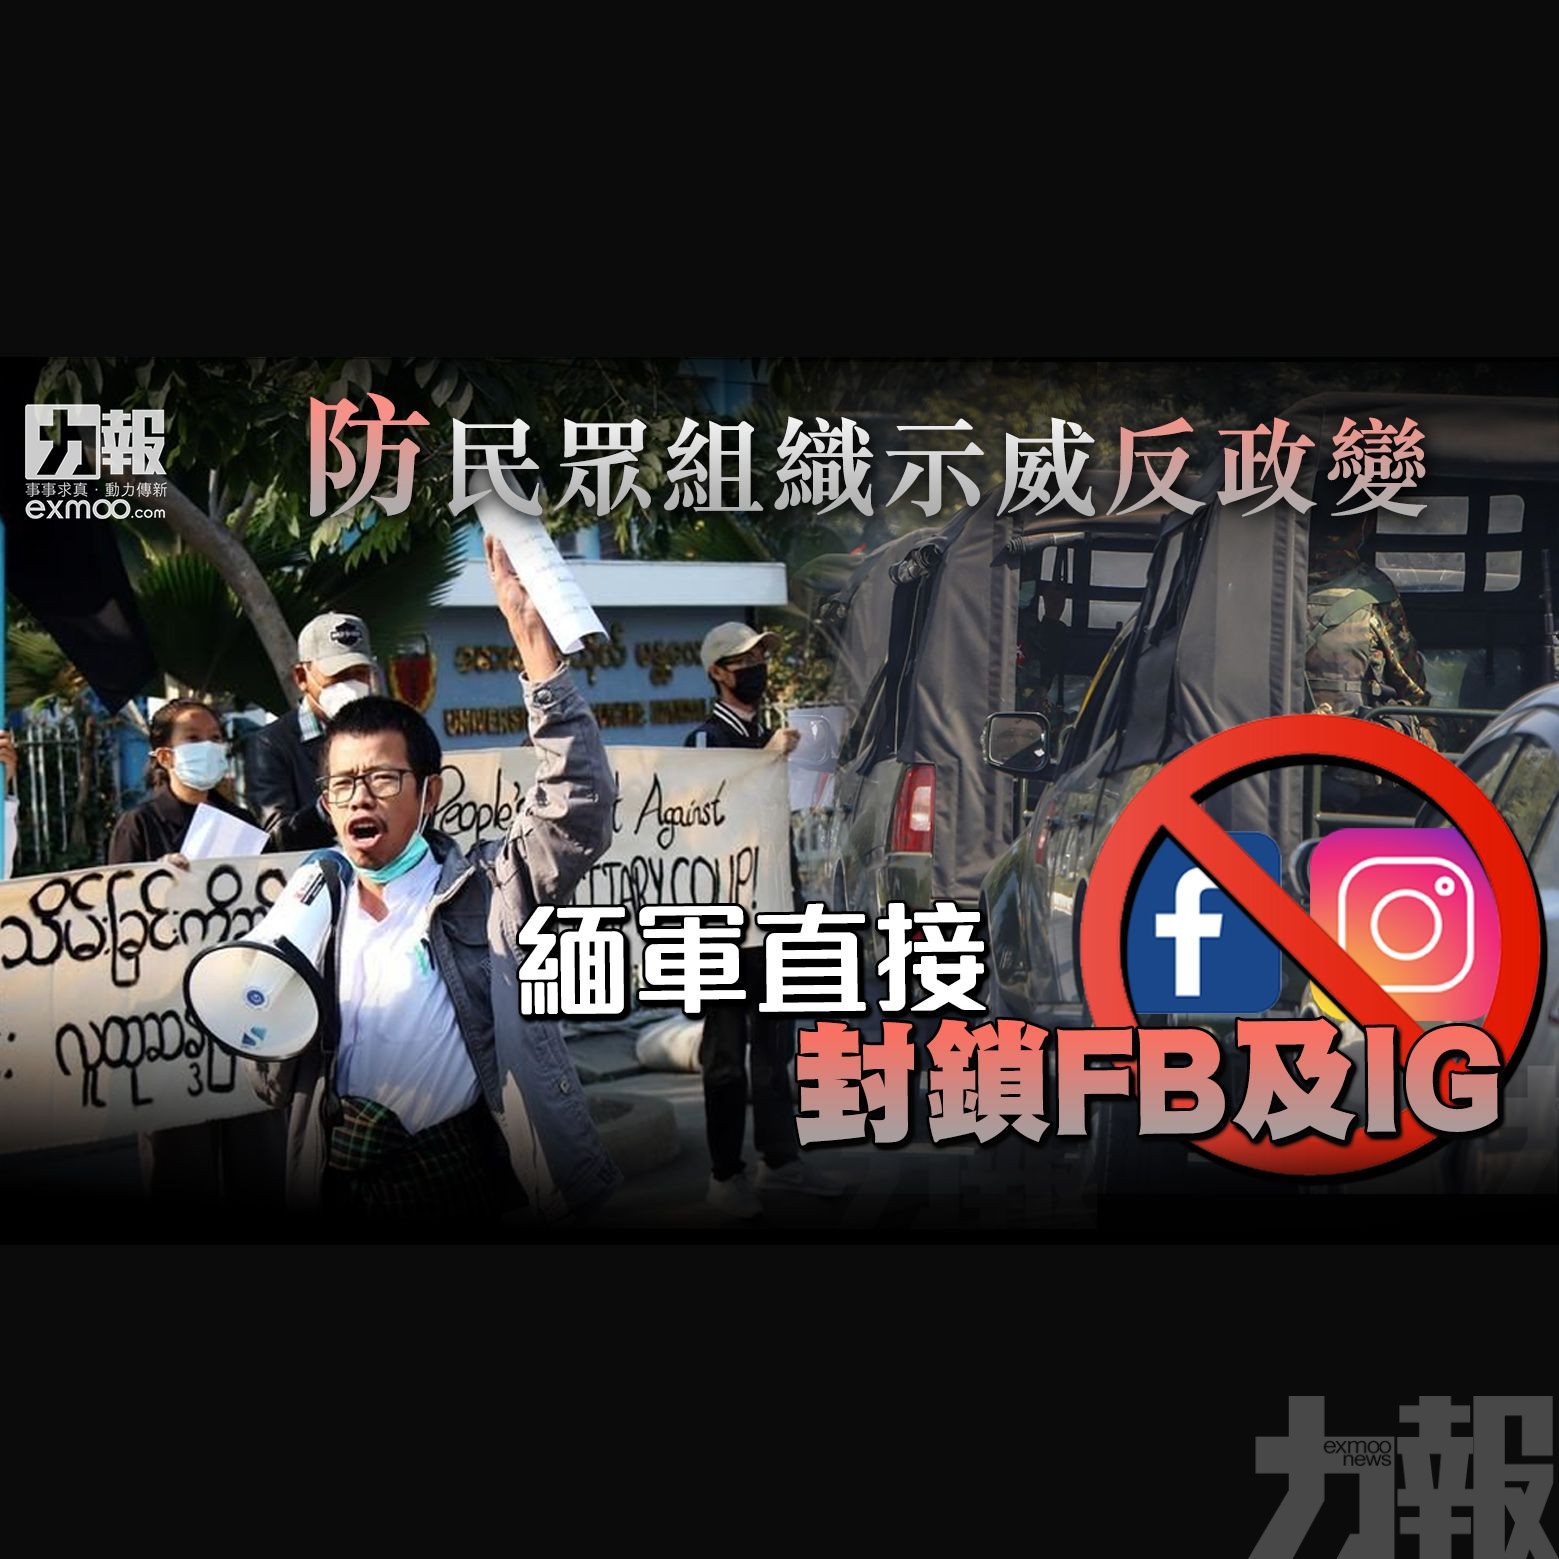 緬軍直接封鎖FB及IG